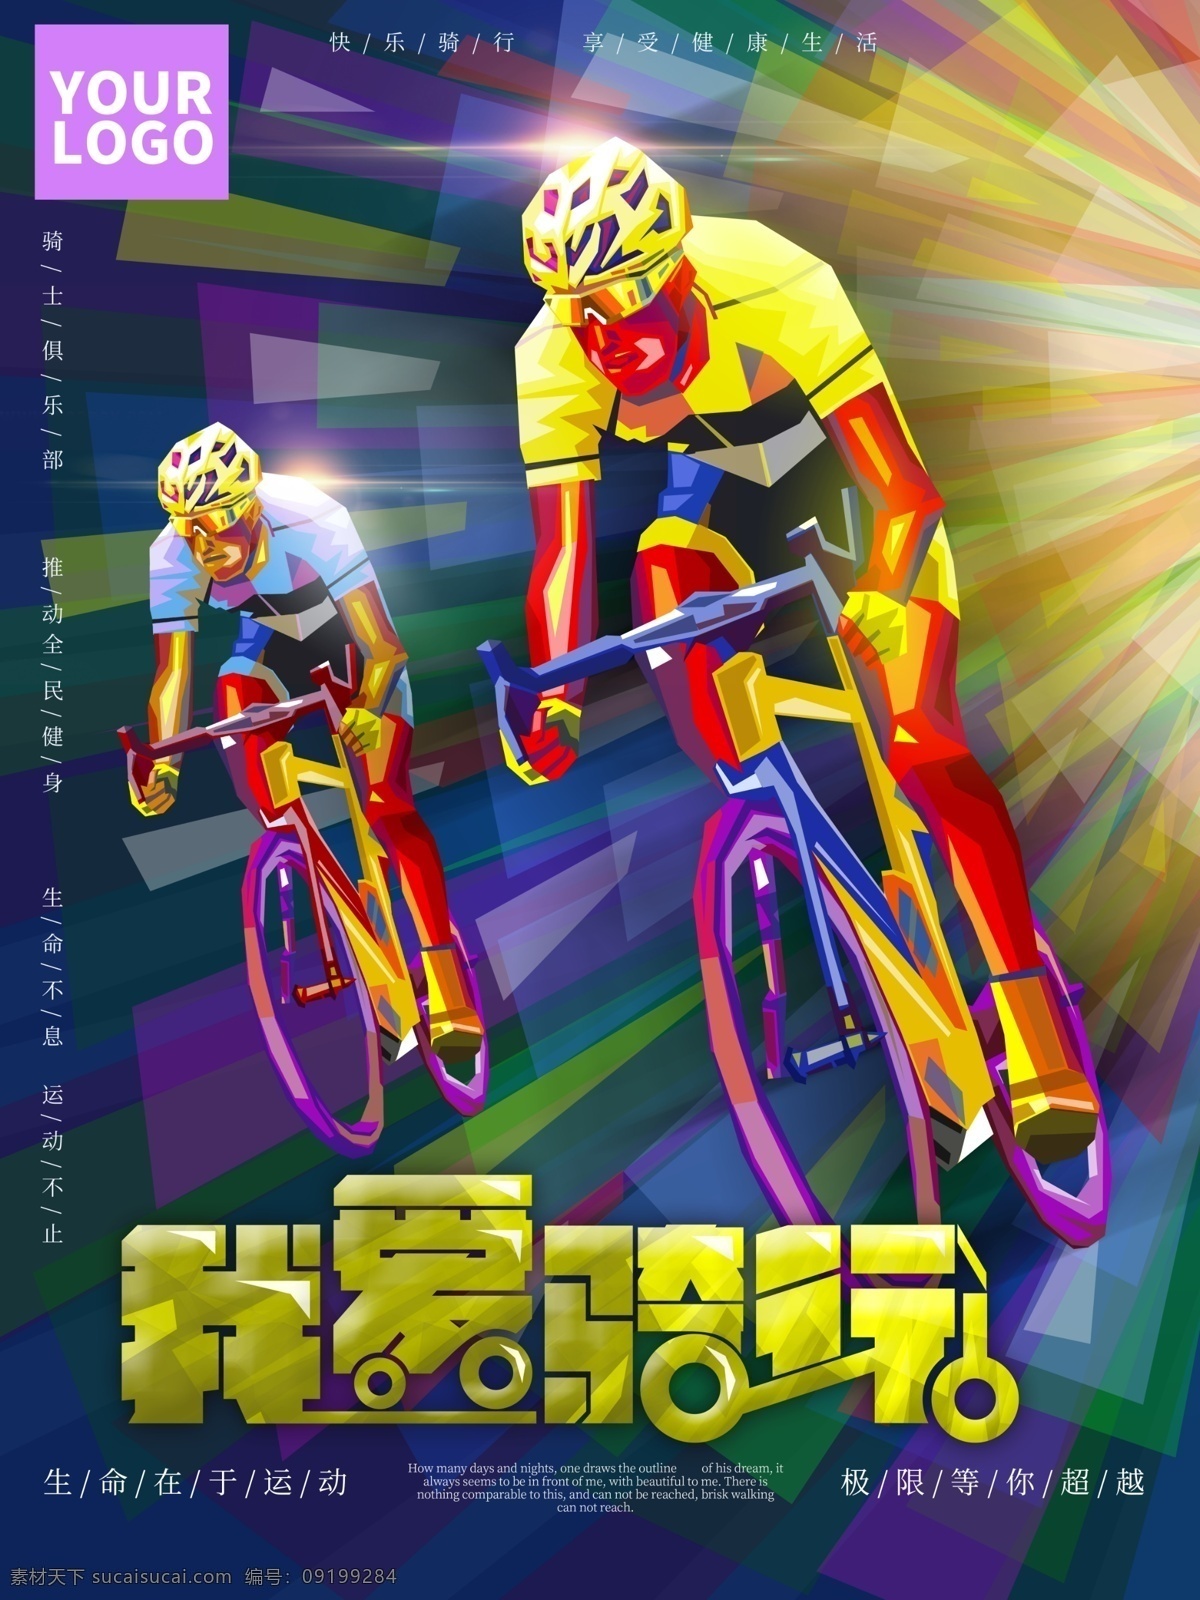 我爱 骑 行 宣传海报 我爱骑行 psd素材 自行车海报 骑行海报 海报素材